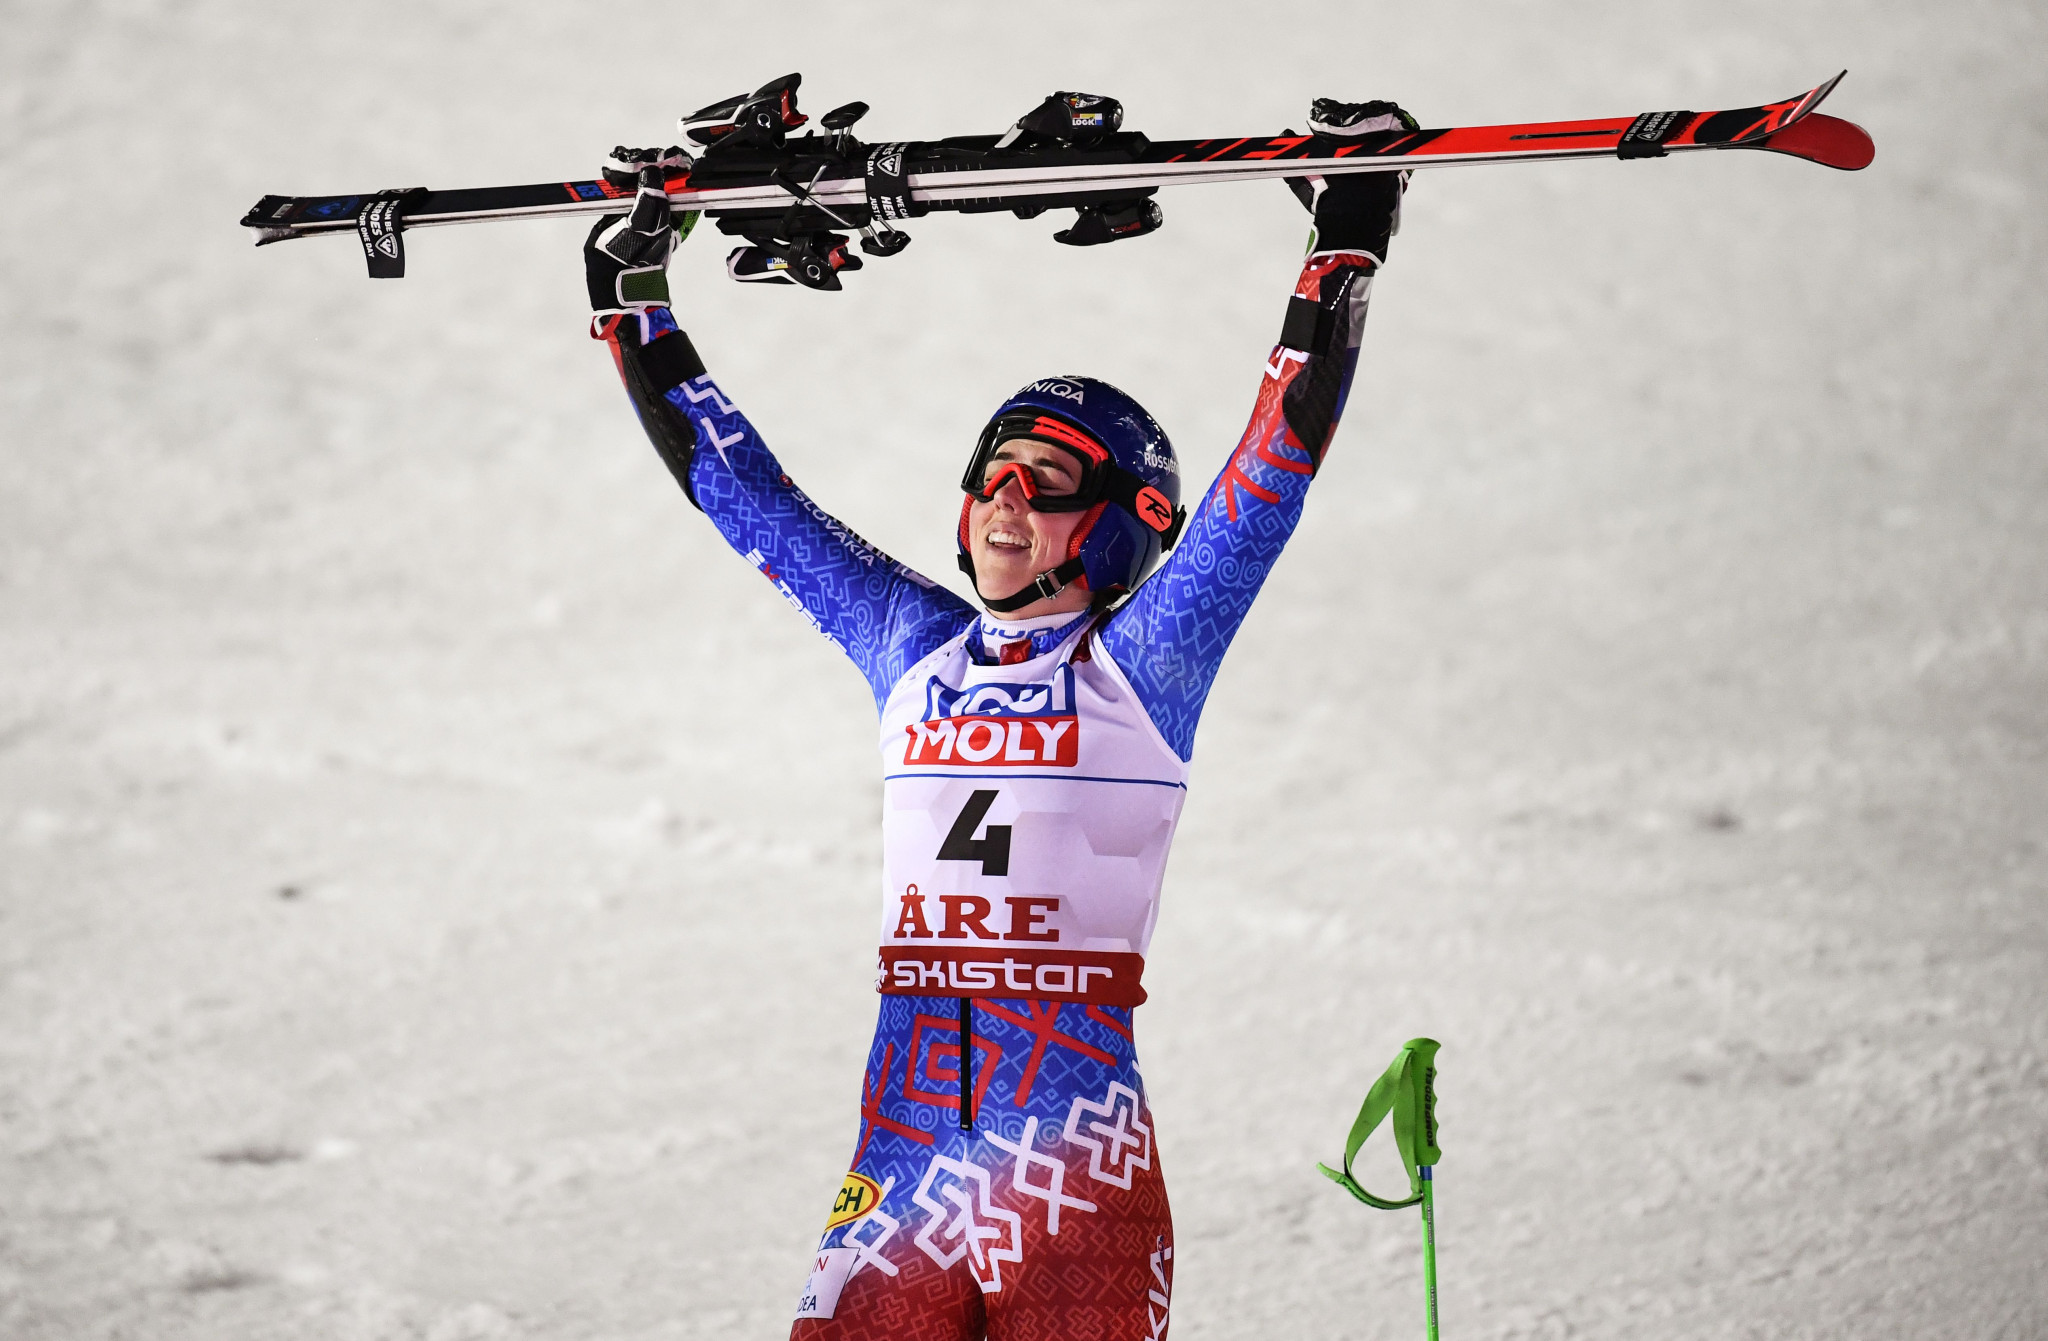 Vlhova wins world giant slalom title in Åre as Shiffrin settles for bronze 